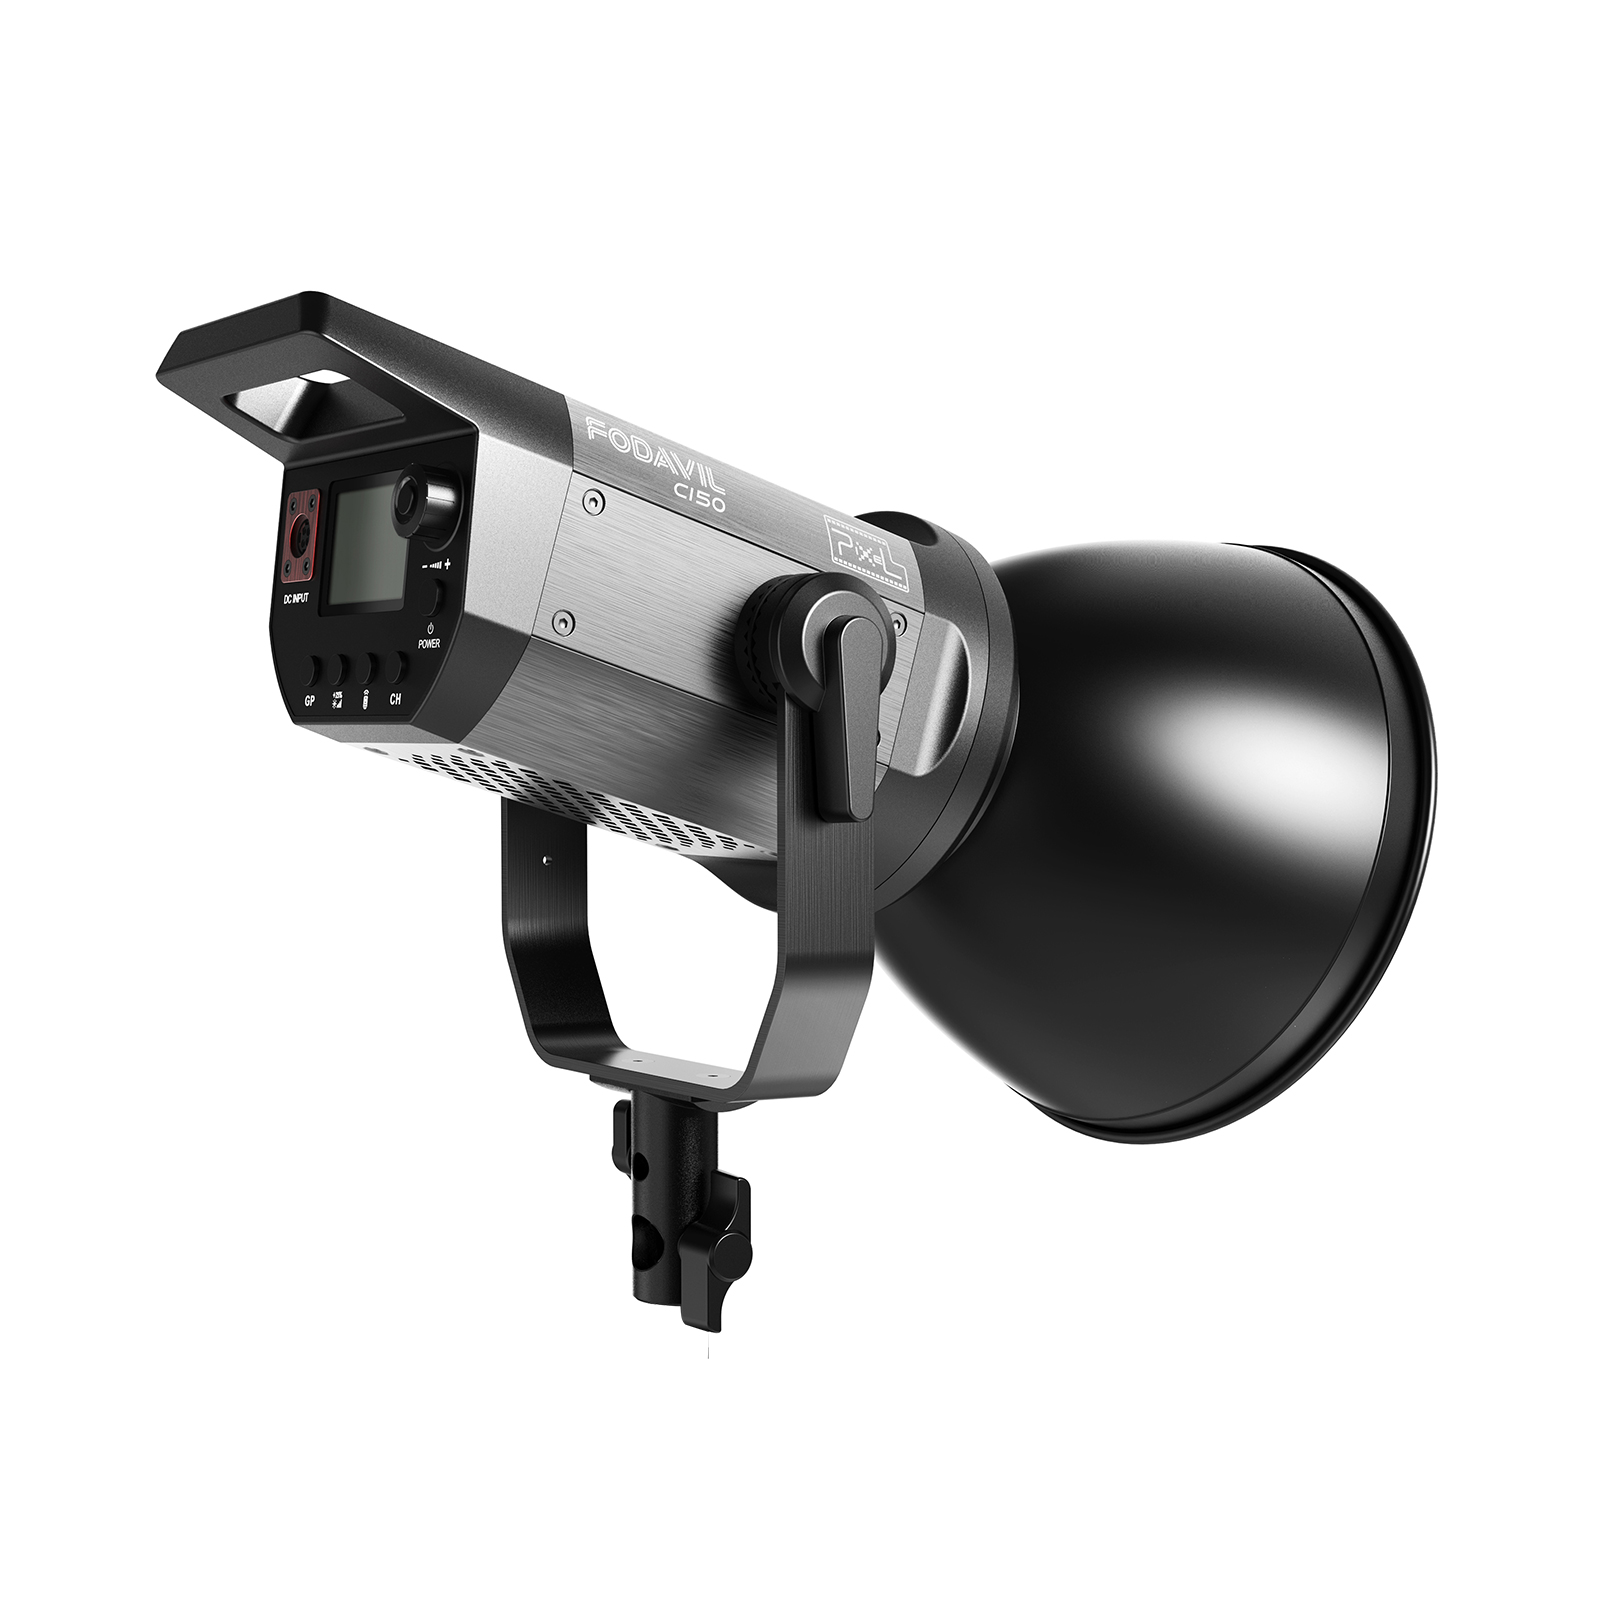 品色Pixel C150 COB摄影灯,超高显色性,超广域色温,100级饱和度,轻薄便携,智能特效,灵活调色